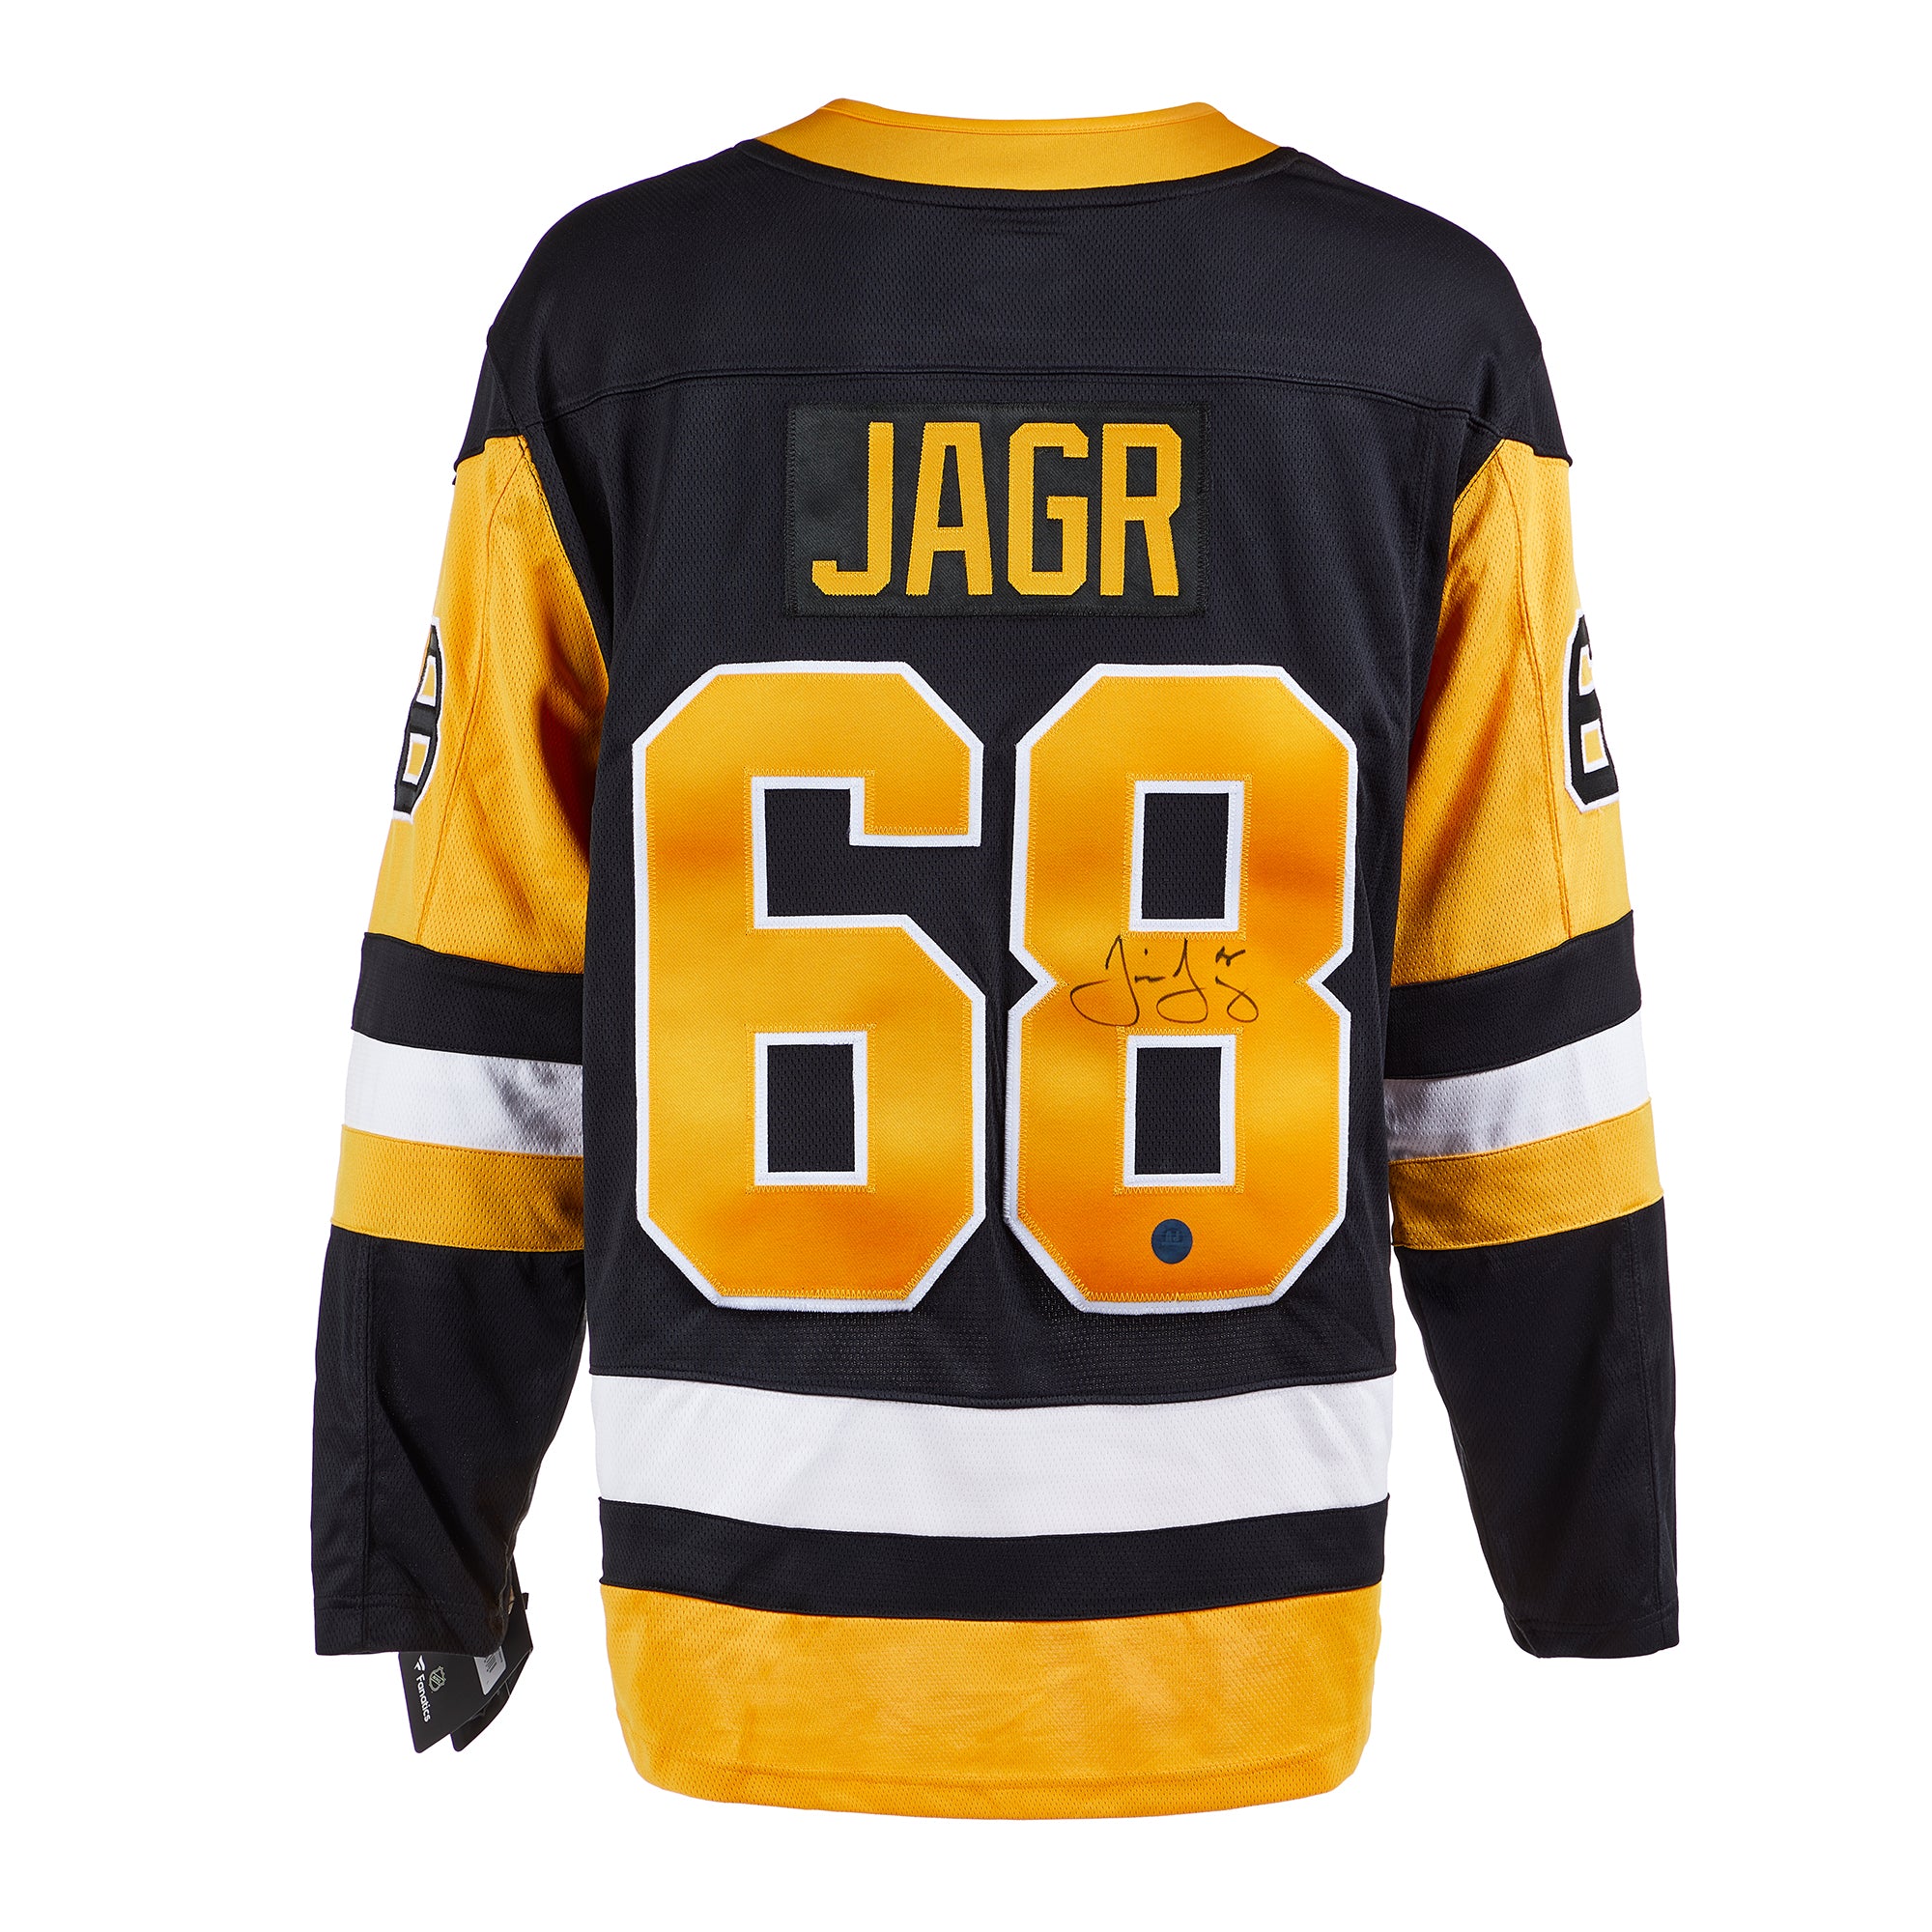 Jaromir Jagr Signed Penguins Jersey (TSE COA & PSA COA)